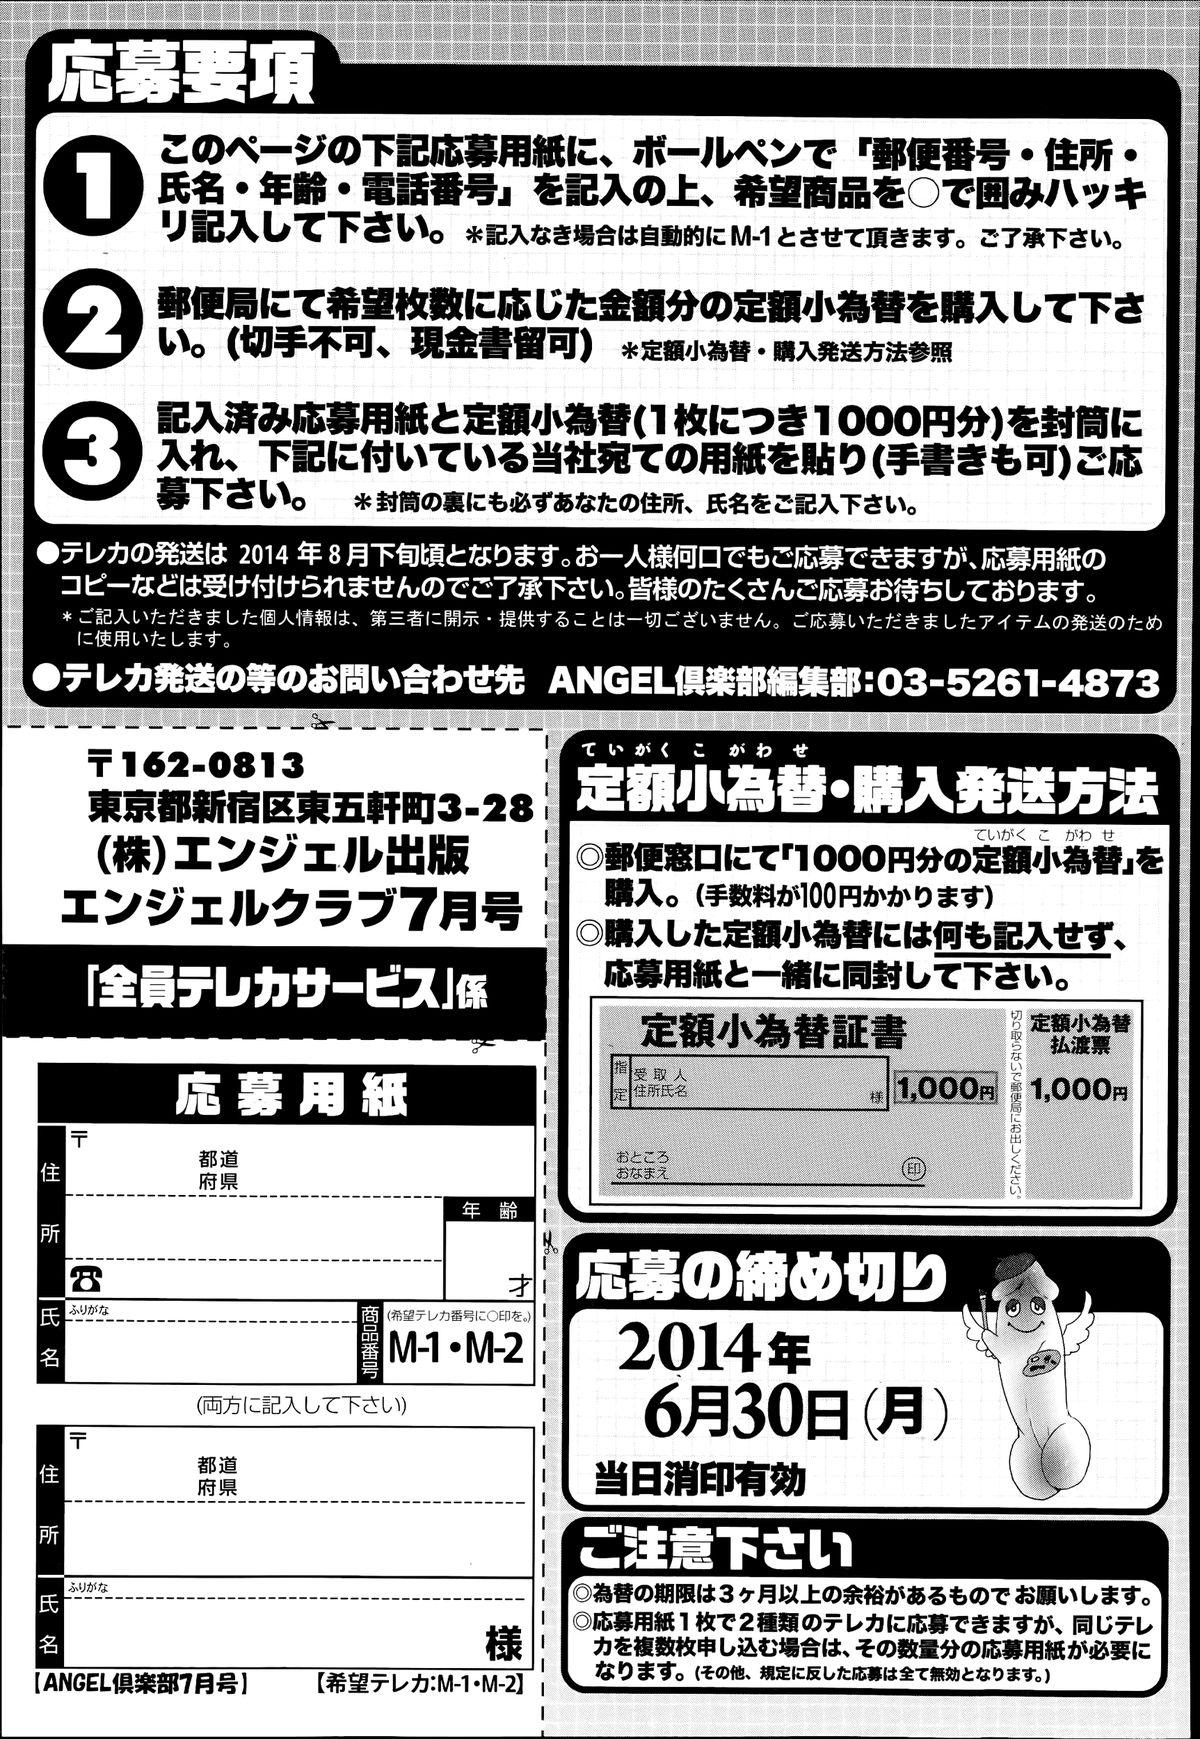 ANGEL Club 2014-07 206